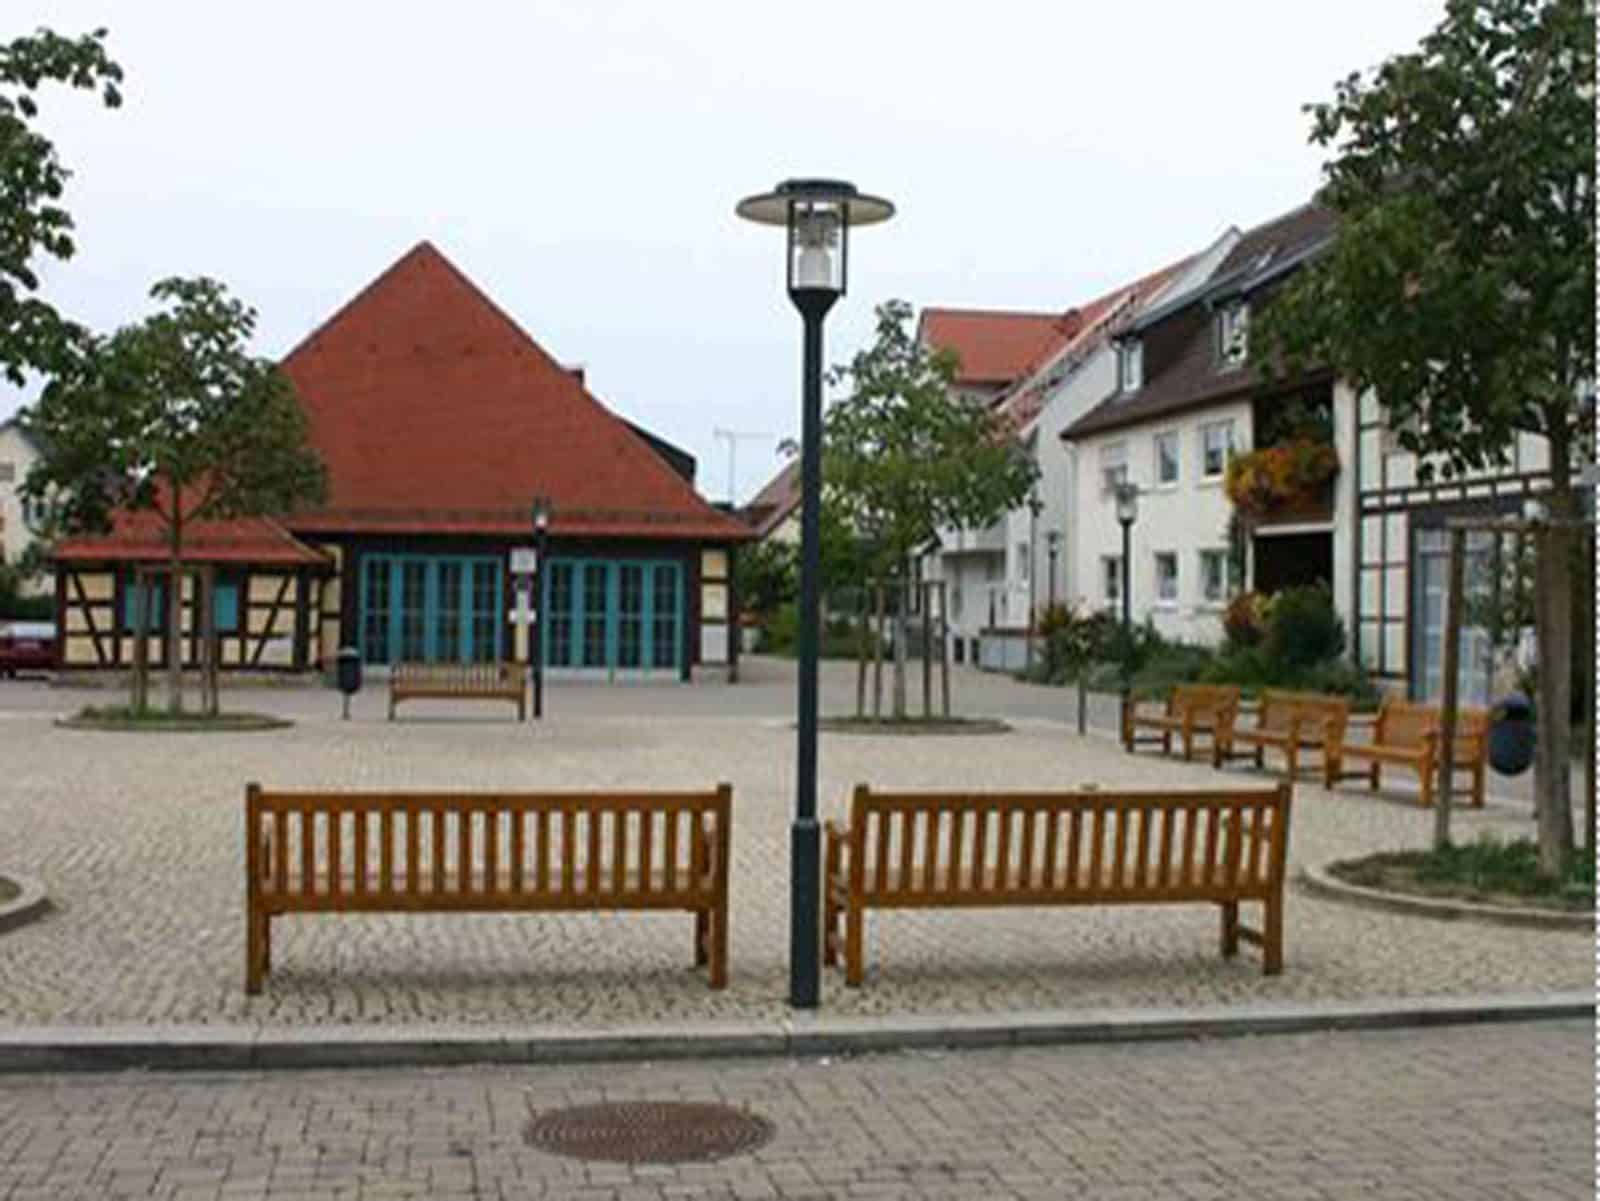 Das Foto zeigt den Kelterplatz in Eglosheim. Um den Platz stehen einige Holzbänke und Bäume sind gepflanzt.